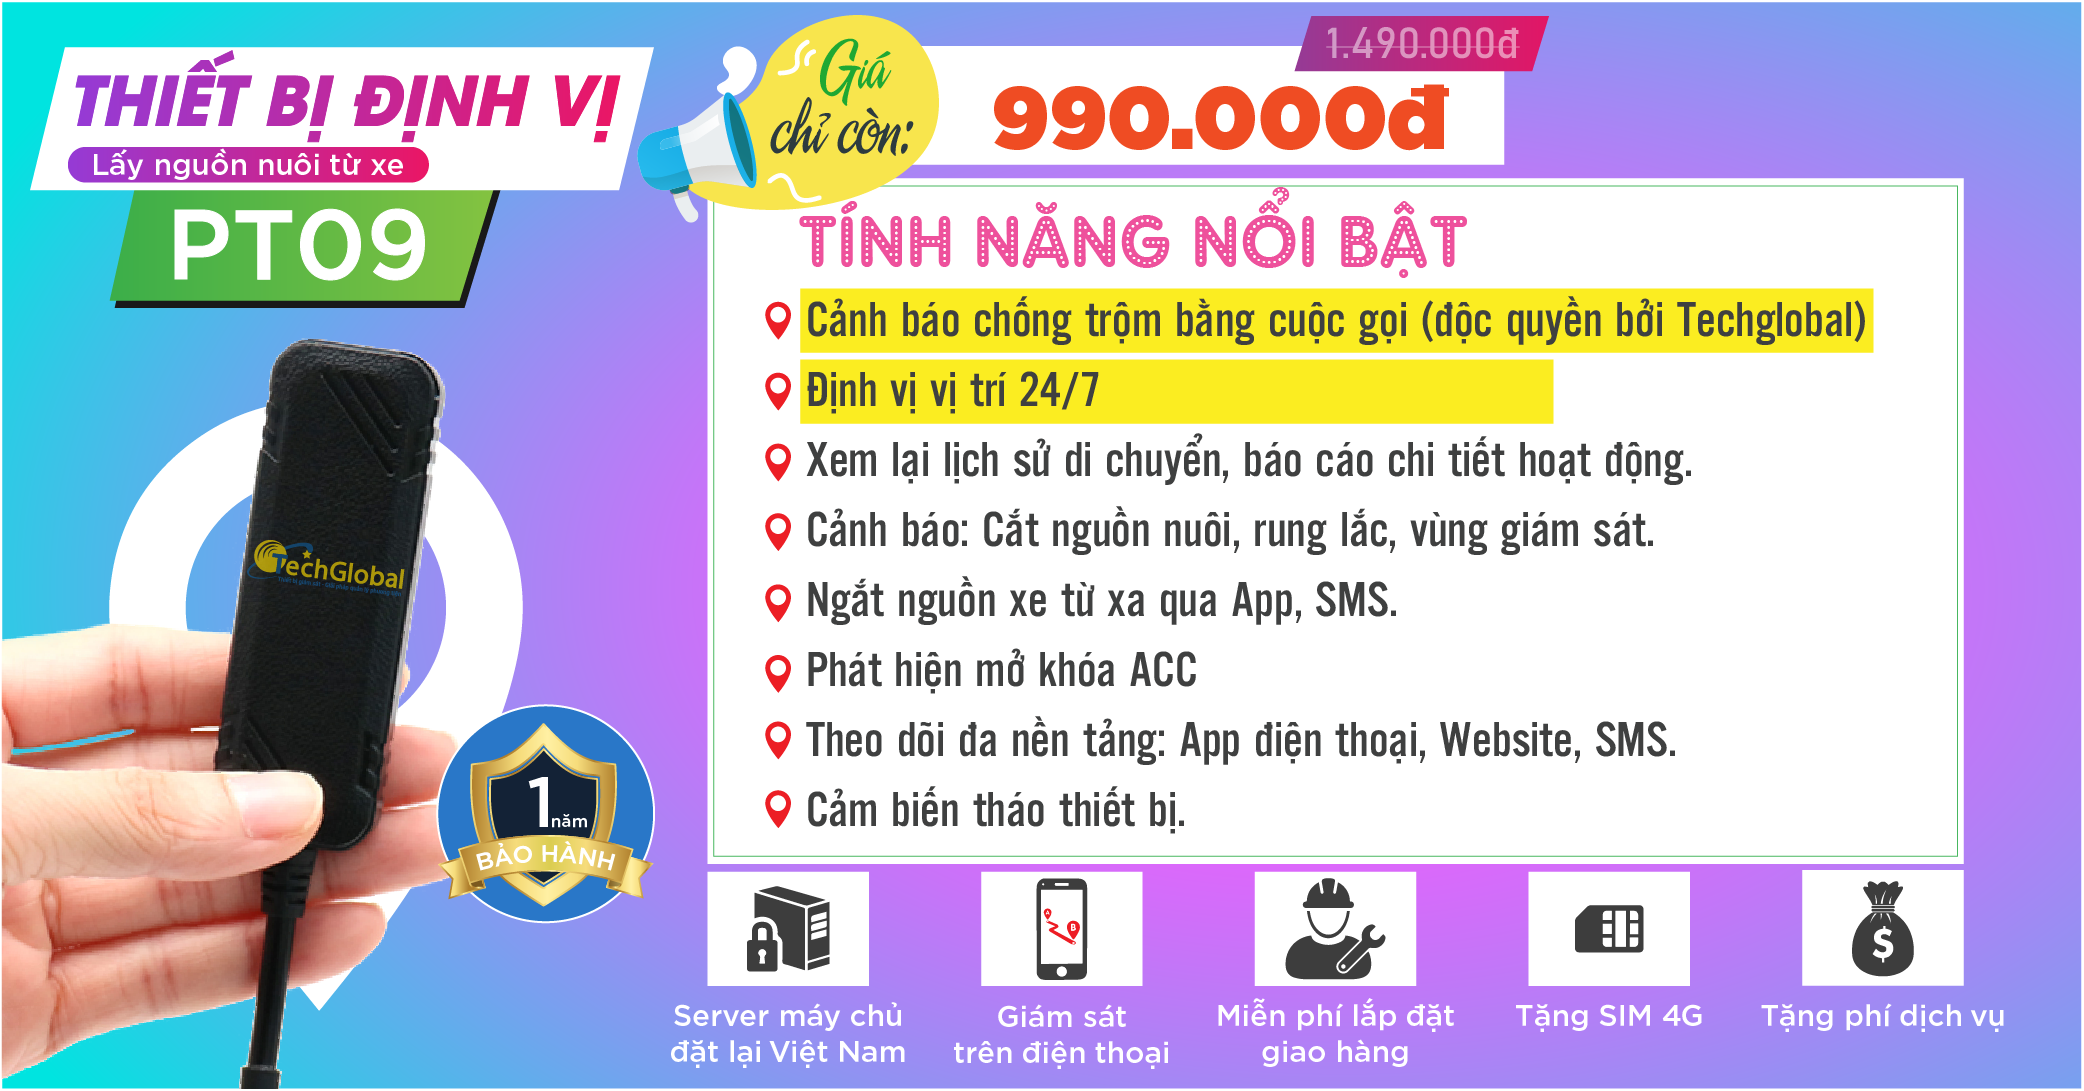 Địa chỉ bán thiết bị định vị giá rẻ tại Hà Nội